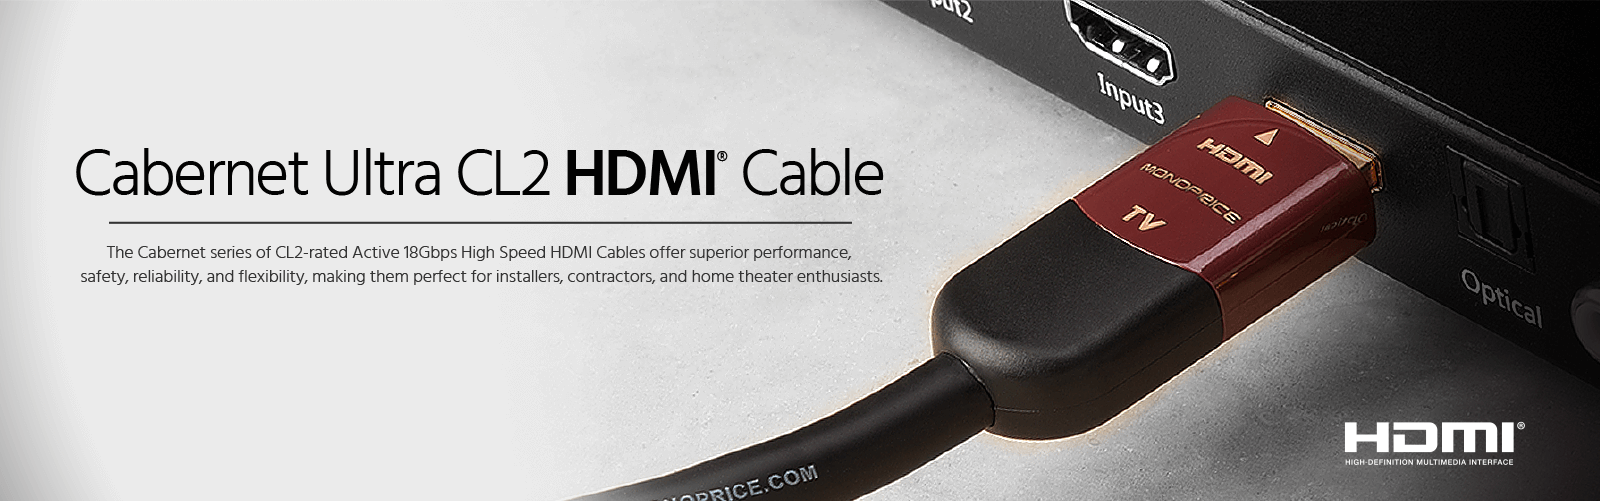 Cabernet HDMI